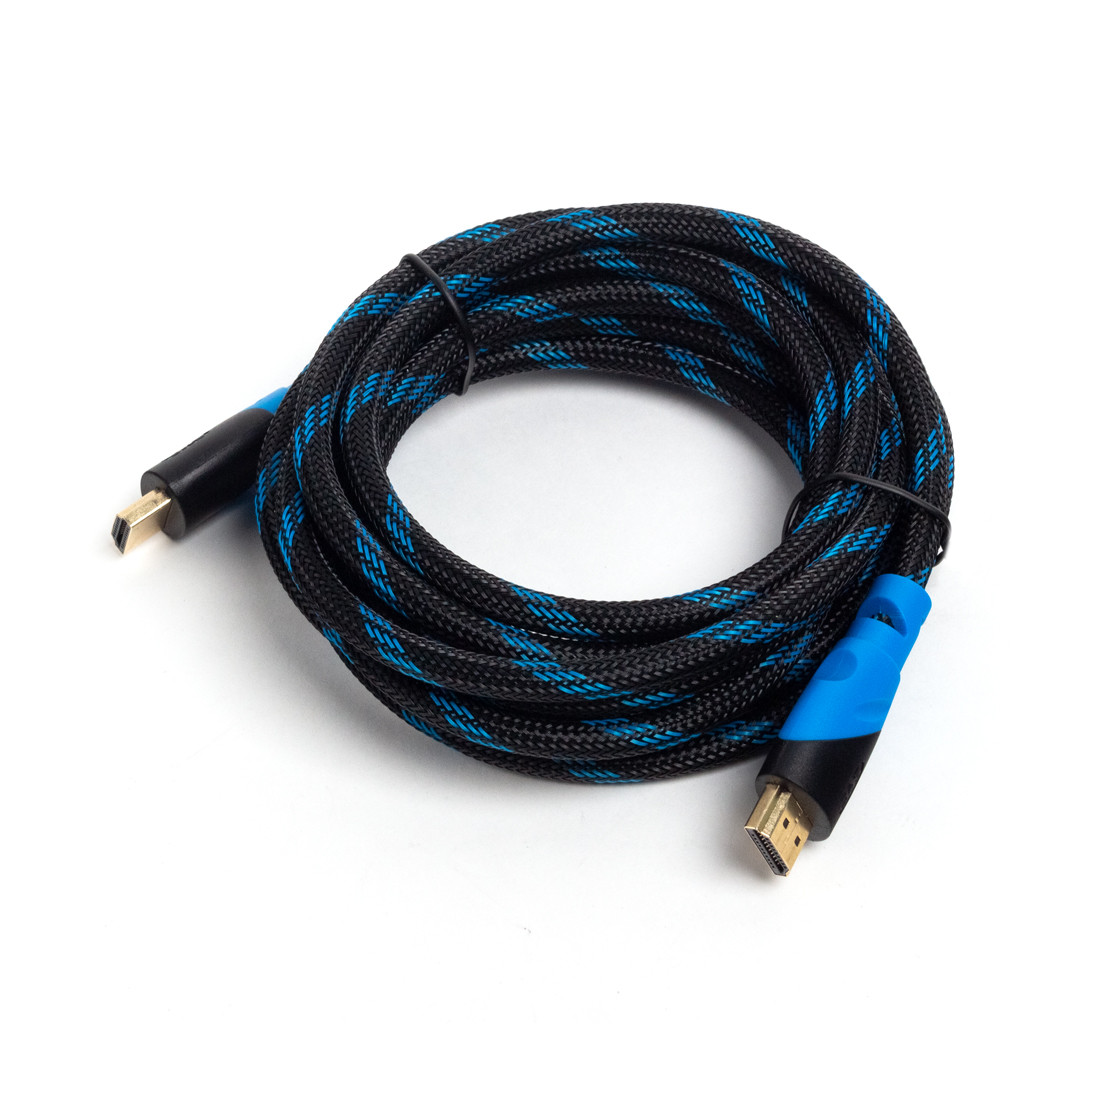 Интерфейсный кабель HDMI-HDMI SVC HR0300LB-P, 30В, Голубой, Пол. пакет, 3 м, фото 1